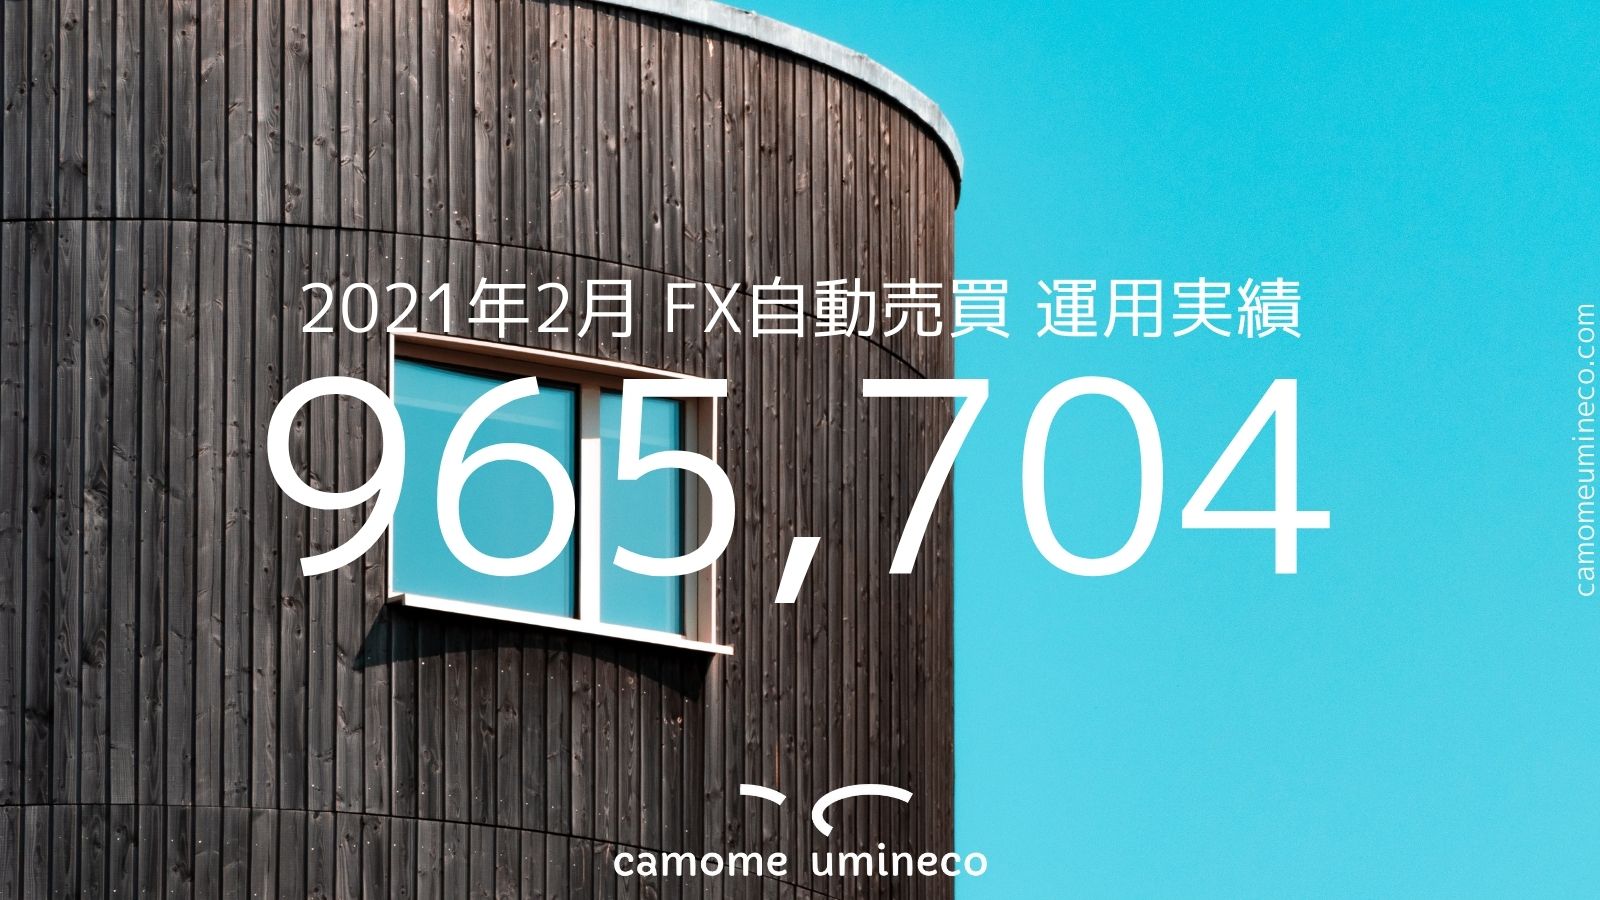 【トライオートFX】2021年2月 運用実績 965,704円